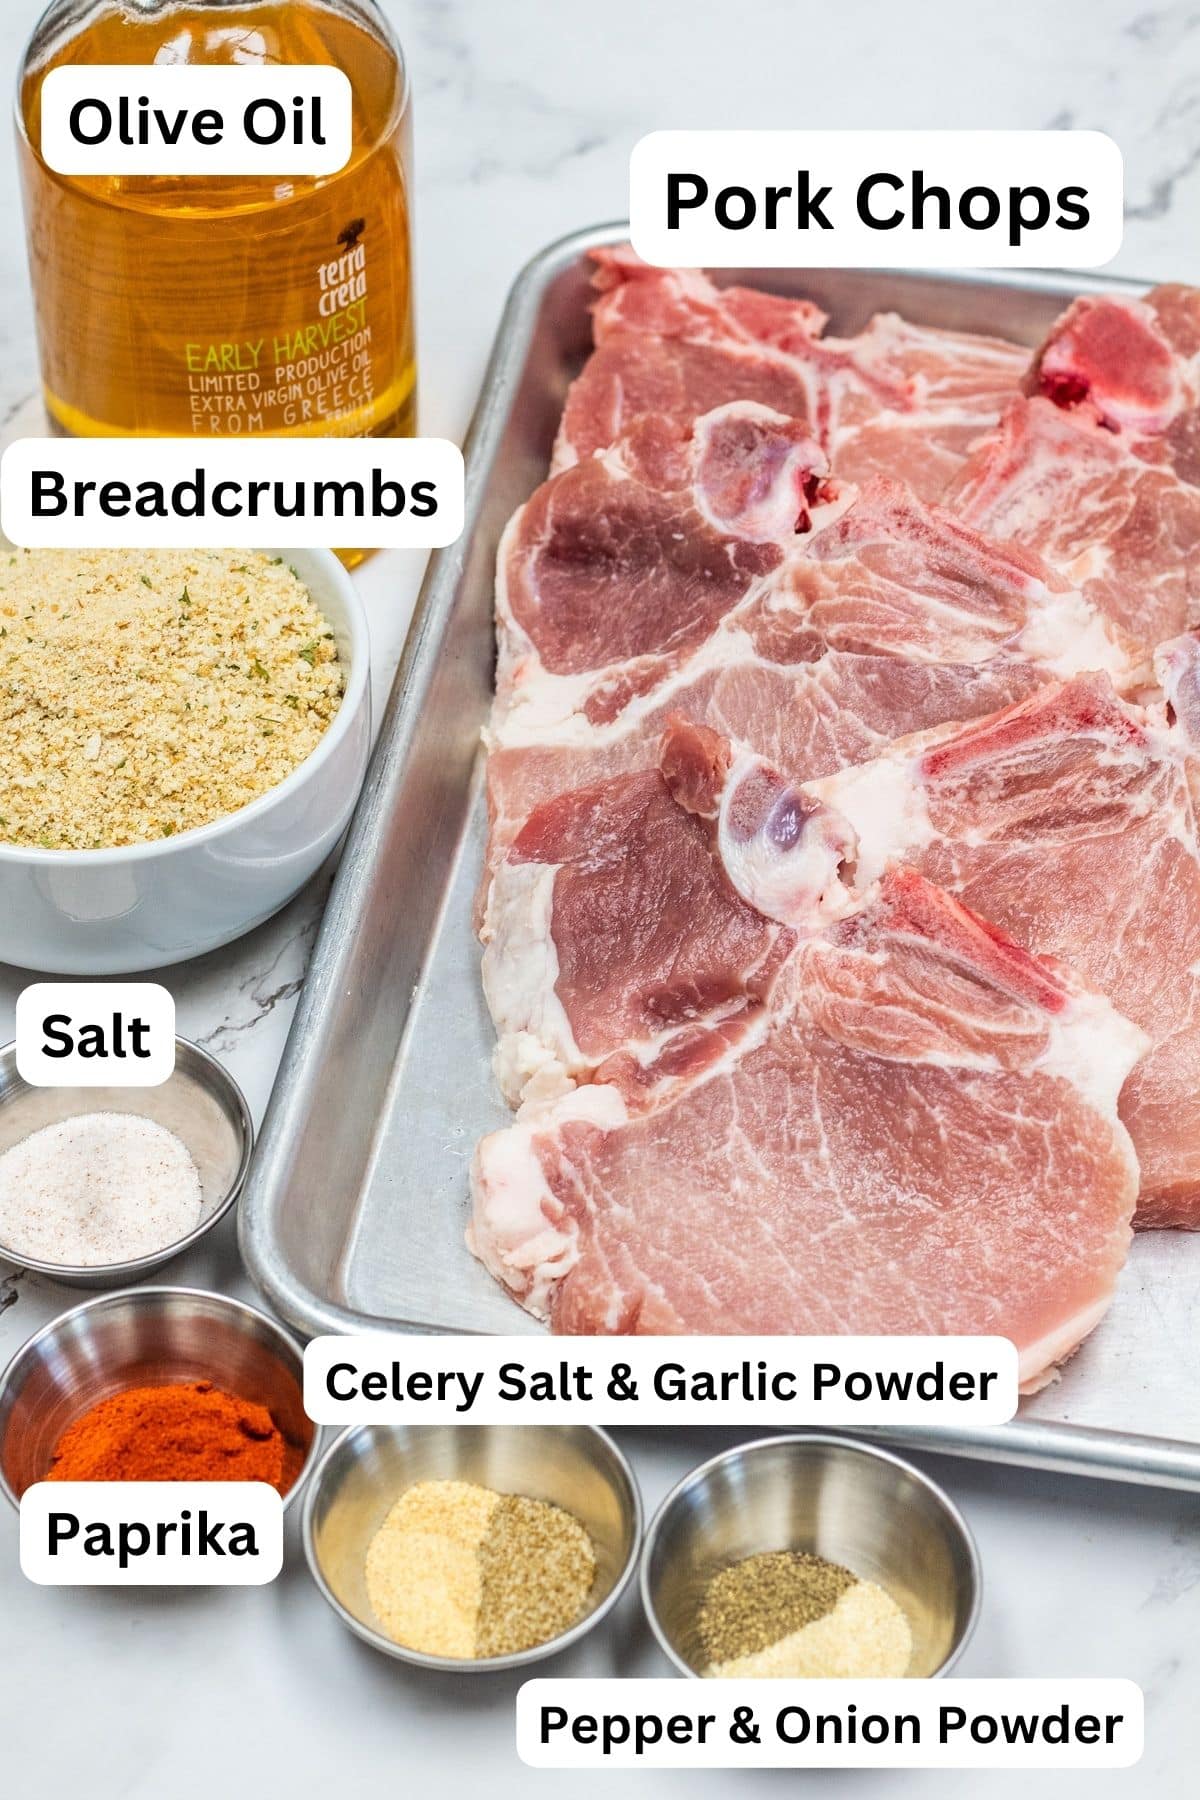 Най-добрите съставки за шейк и печене на свински пържоли „Направи си сам“, измерени и етикетирани.